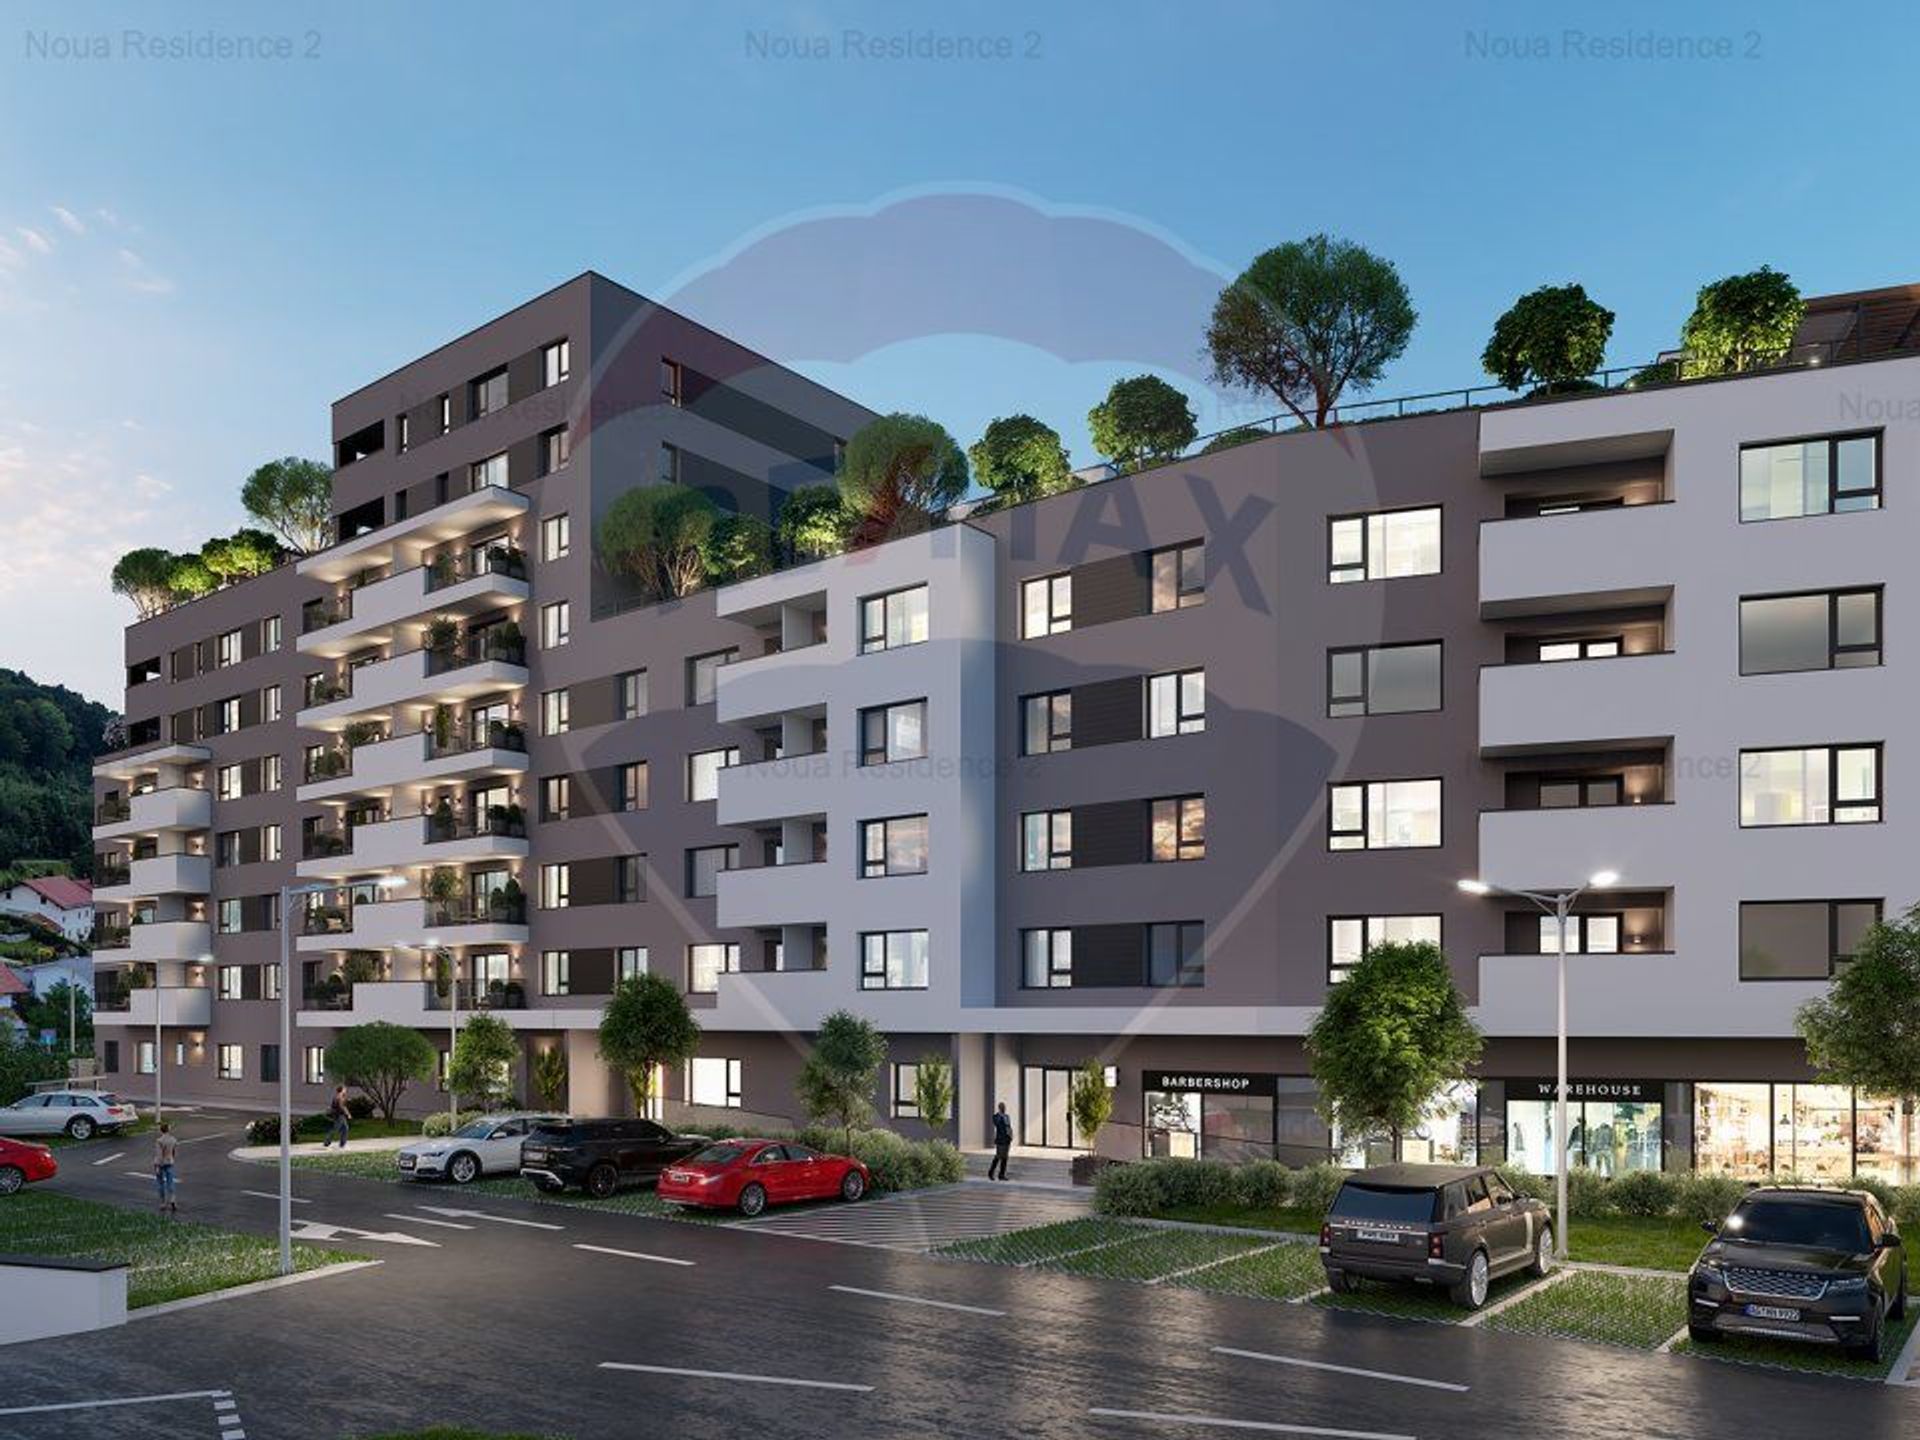 Apartament 2 camere vanzare in bloc de apartamente Brasov, Noua